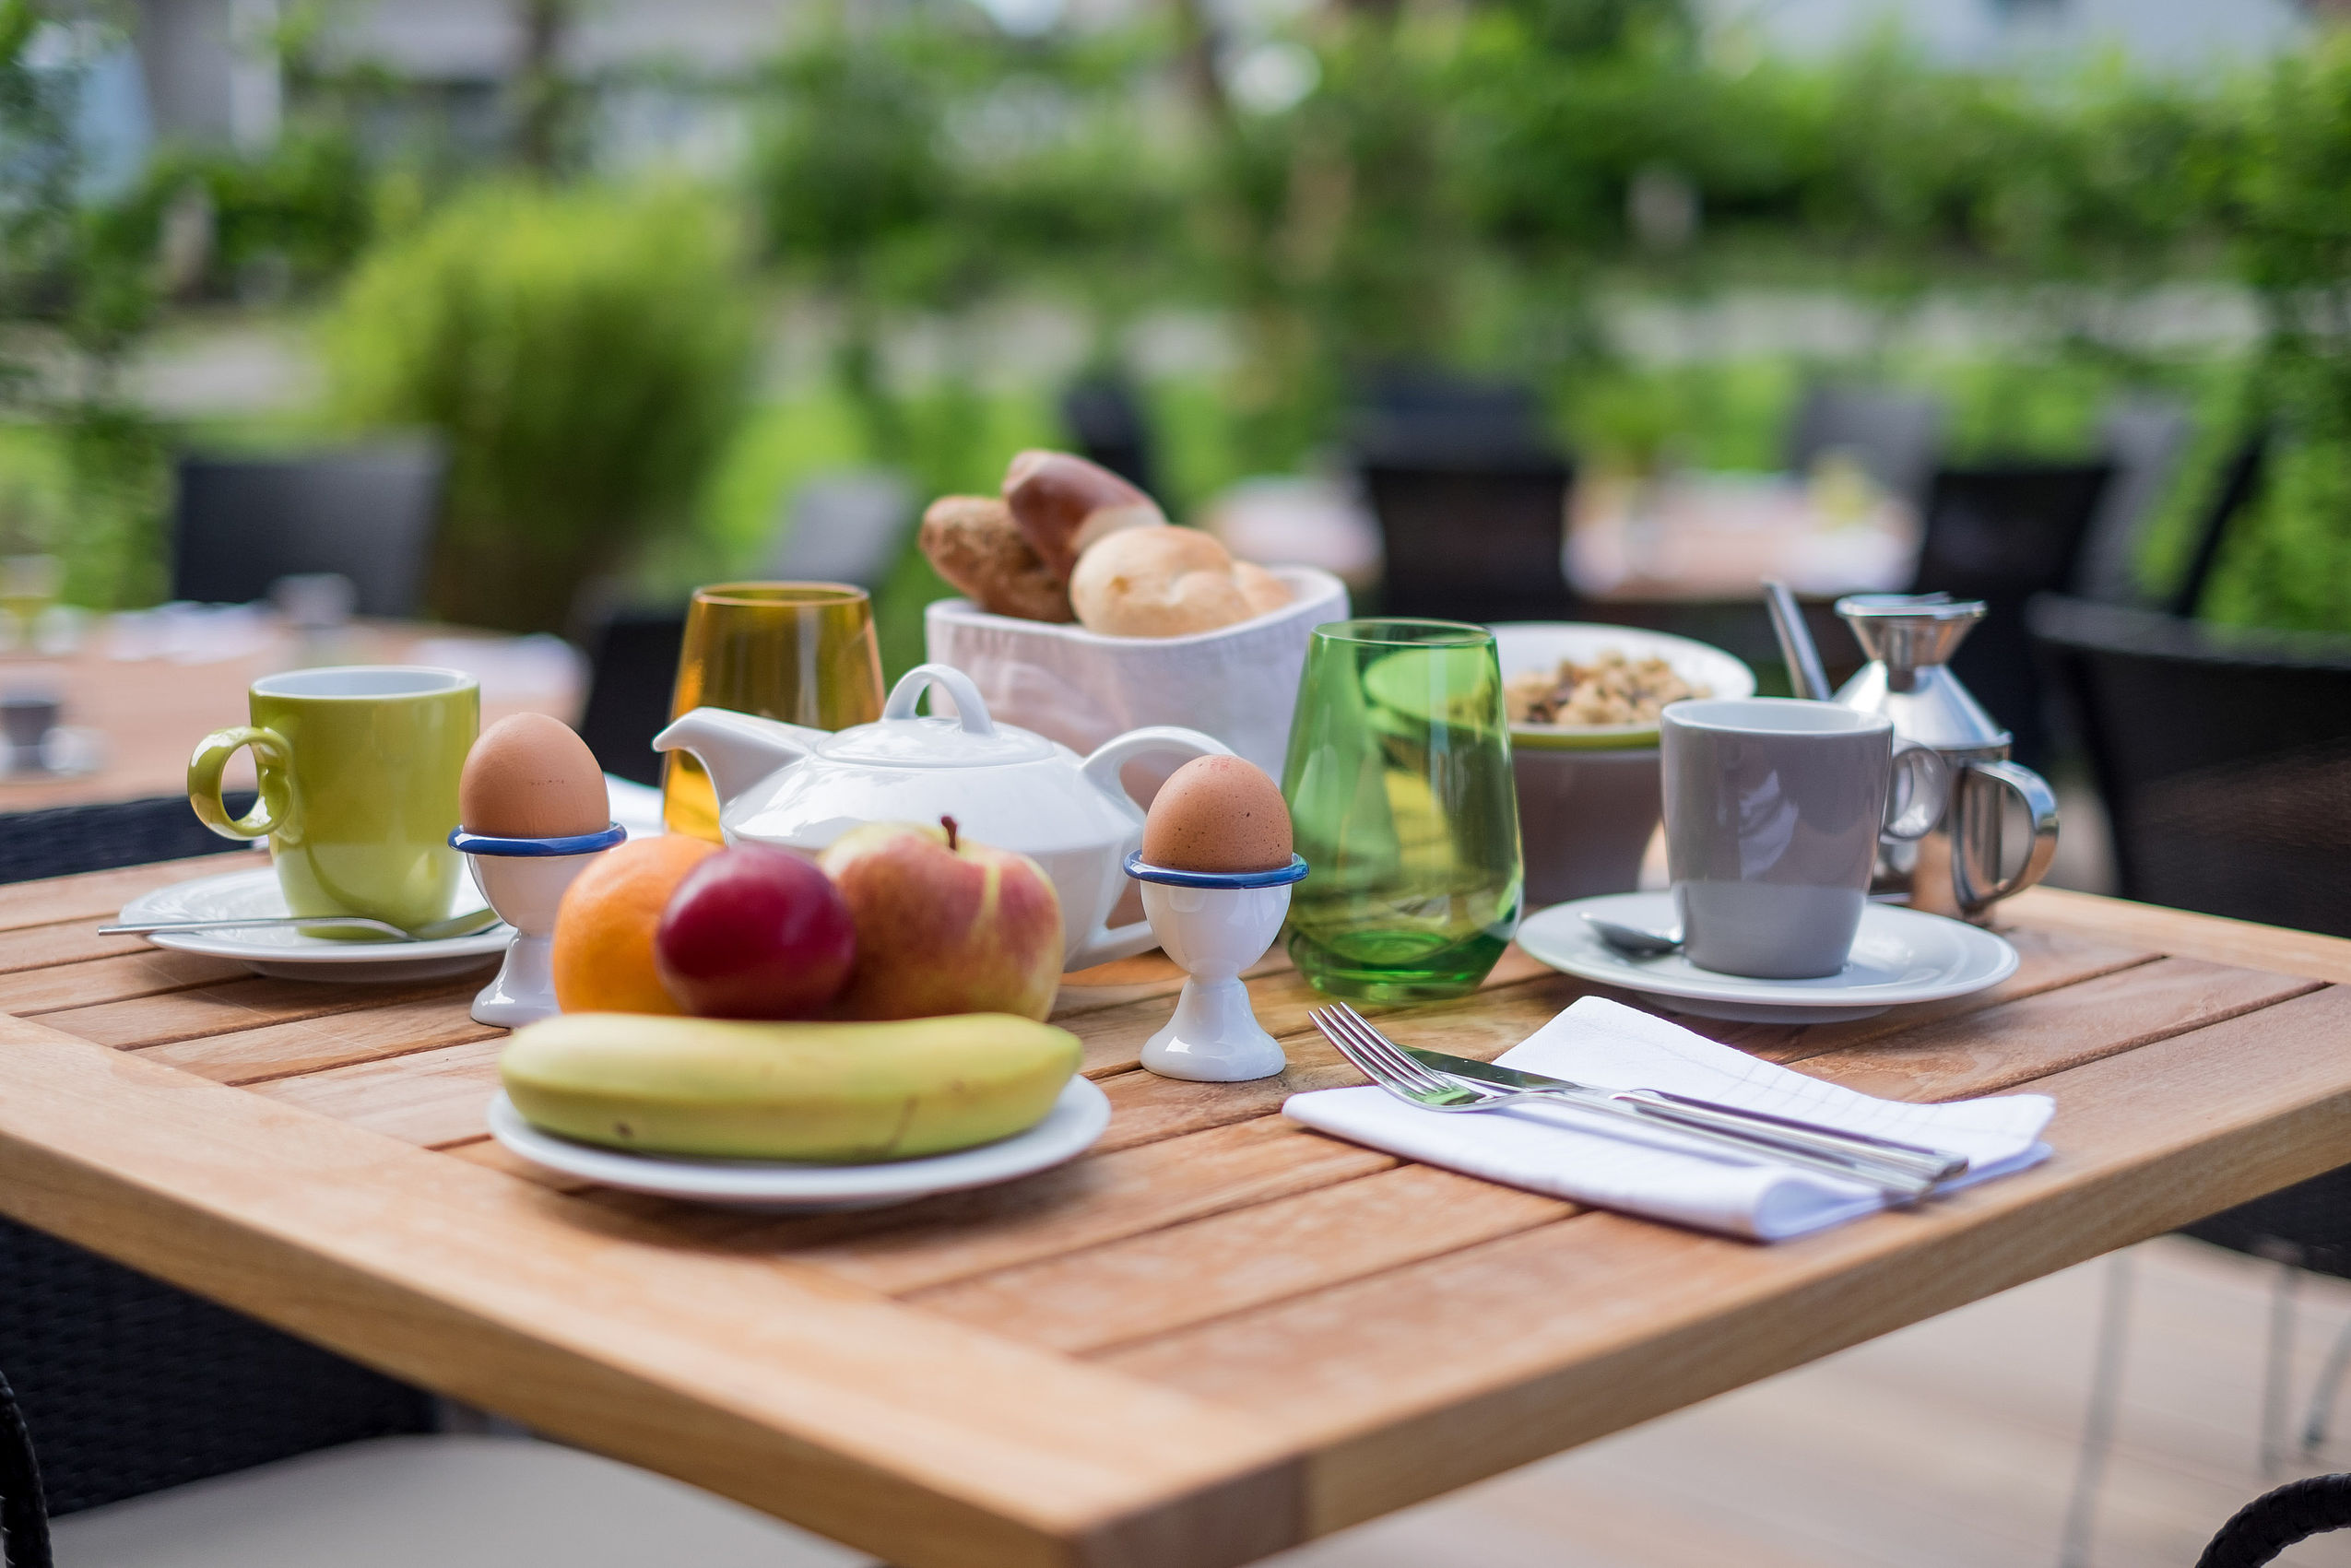 Nahaufnahme von einem Tisch während dem Frühstück im Einbeck mit Obst, Tee, gekochtem Ei und einem Brotkorb